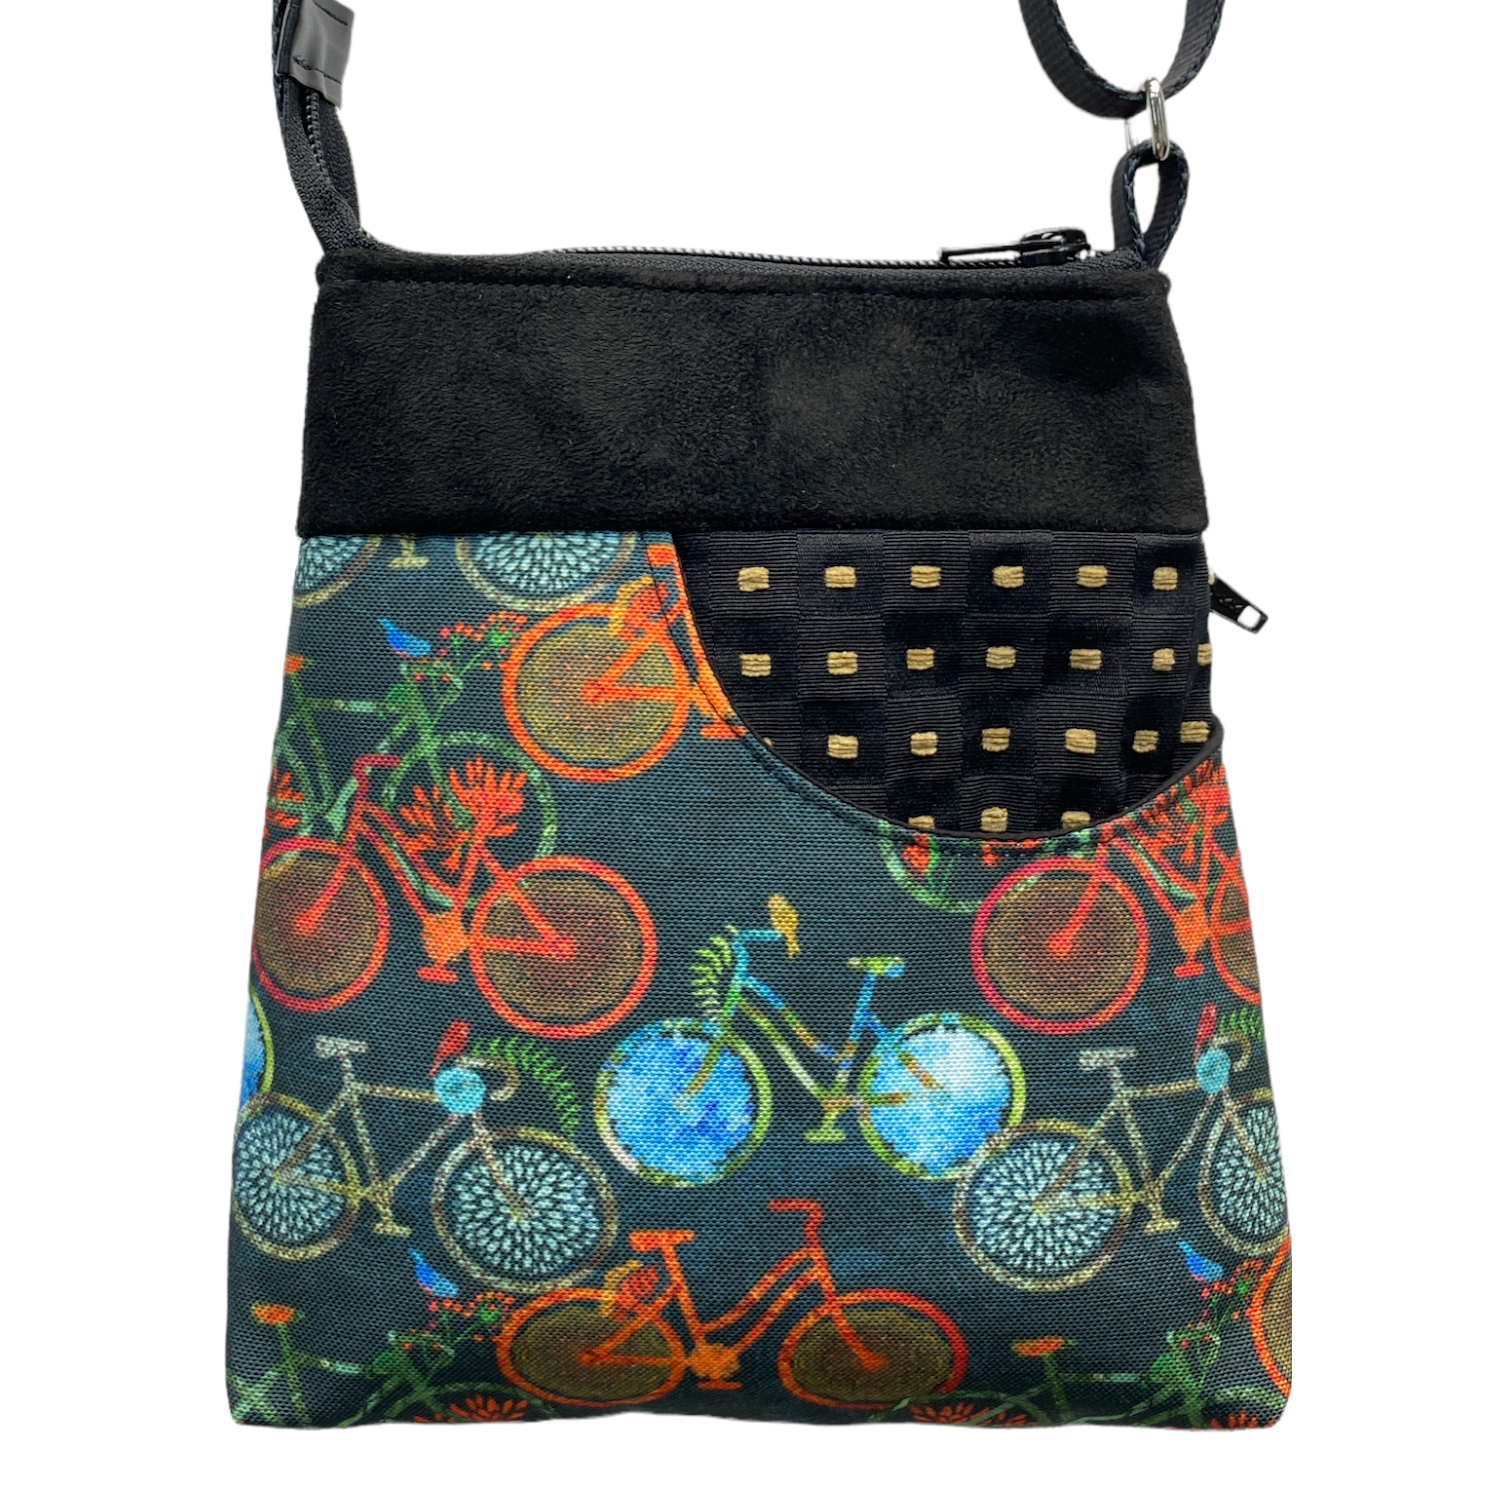 MIILK Bag Bicycles Black/Multicolor